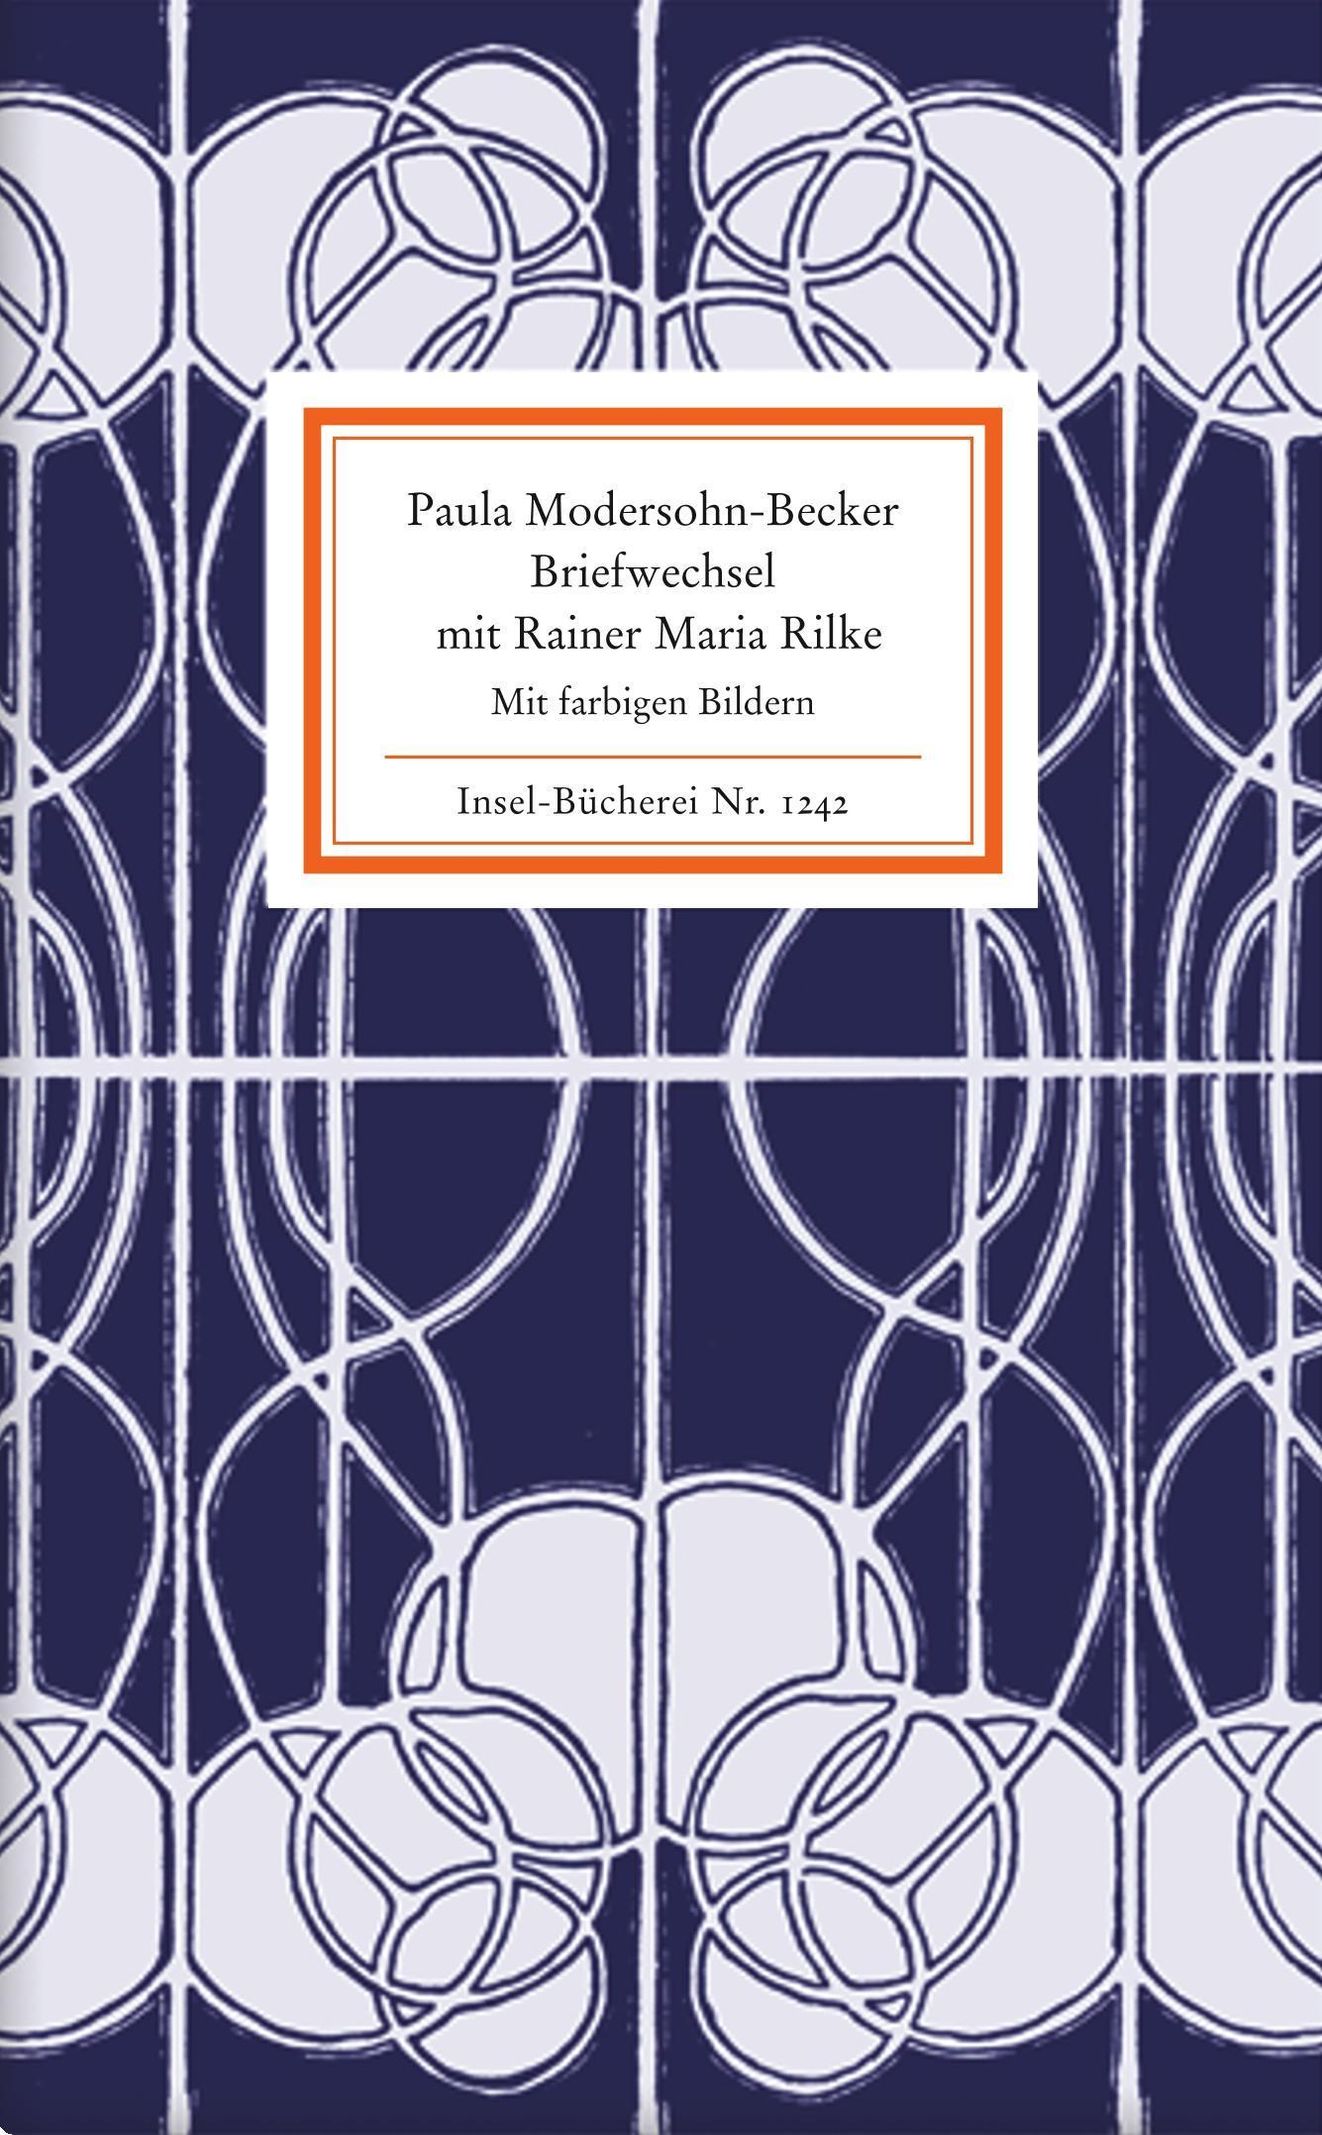 Briefwechsel Buch von Paula Modersohn-Becker versandkostenfrei kaufen